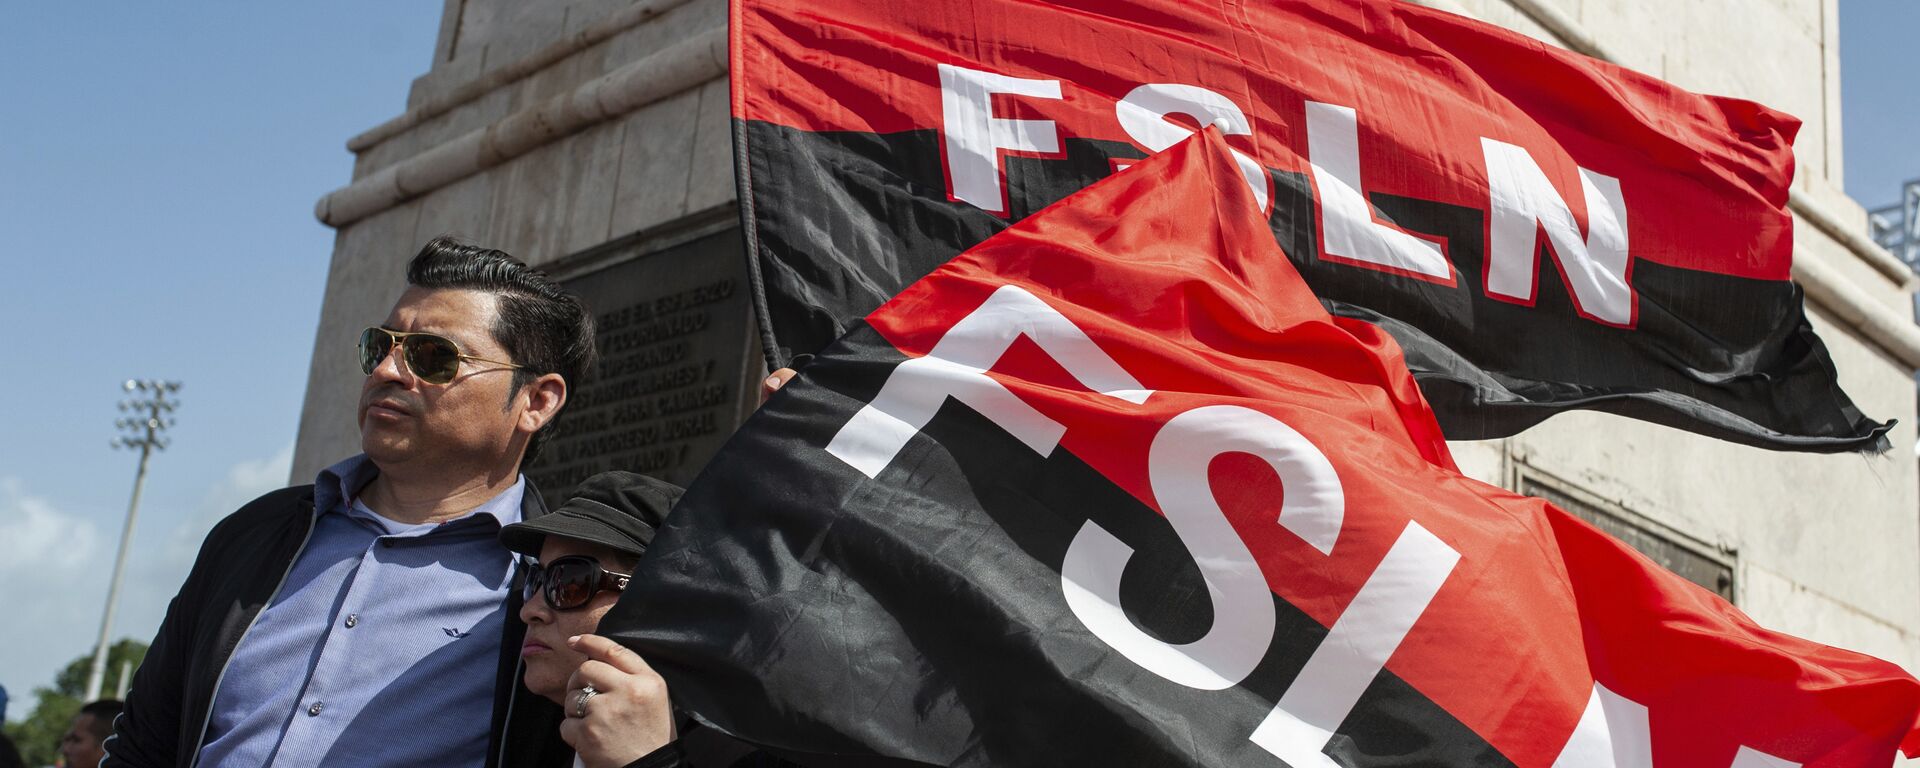 Sandinista porta las banderas del FSLN en el 39 Aniversario de la Revolución nicaraguense - Sputnik Mundo, 1920, 14.07.2022